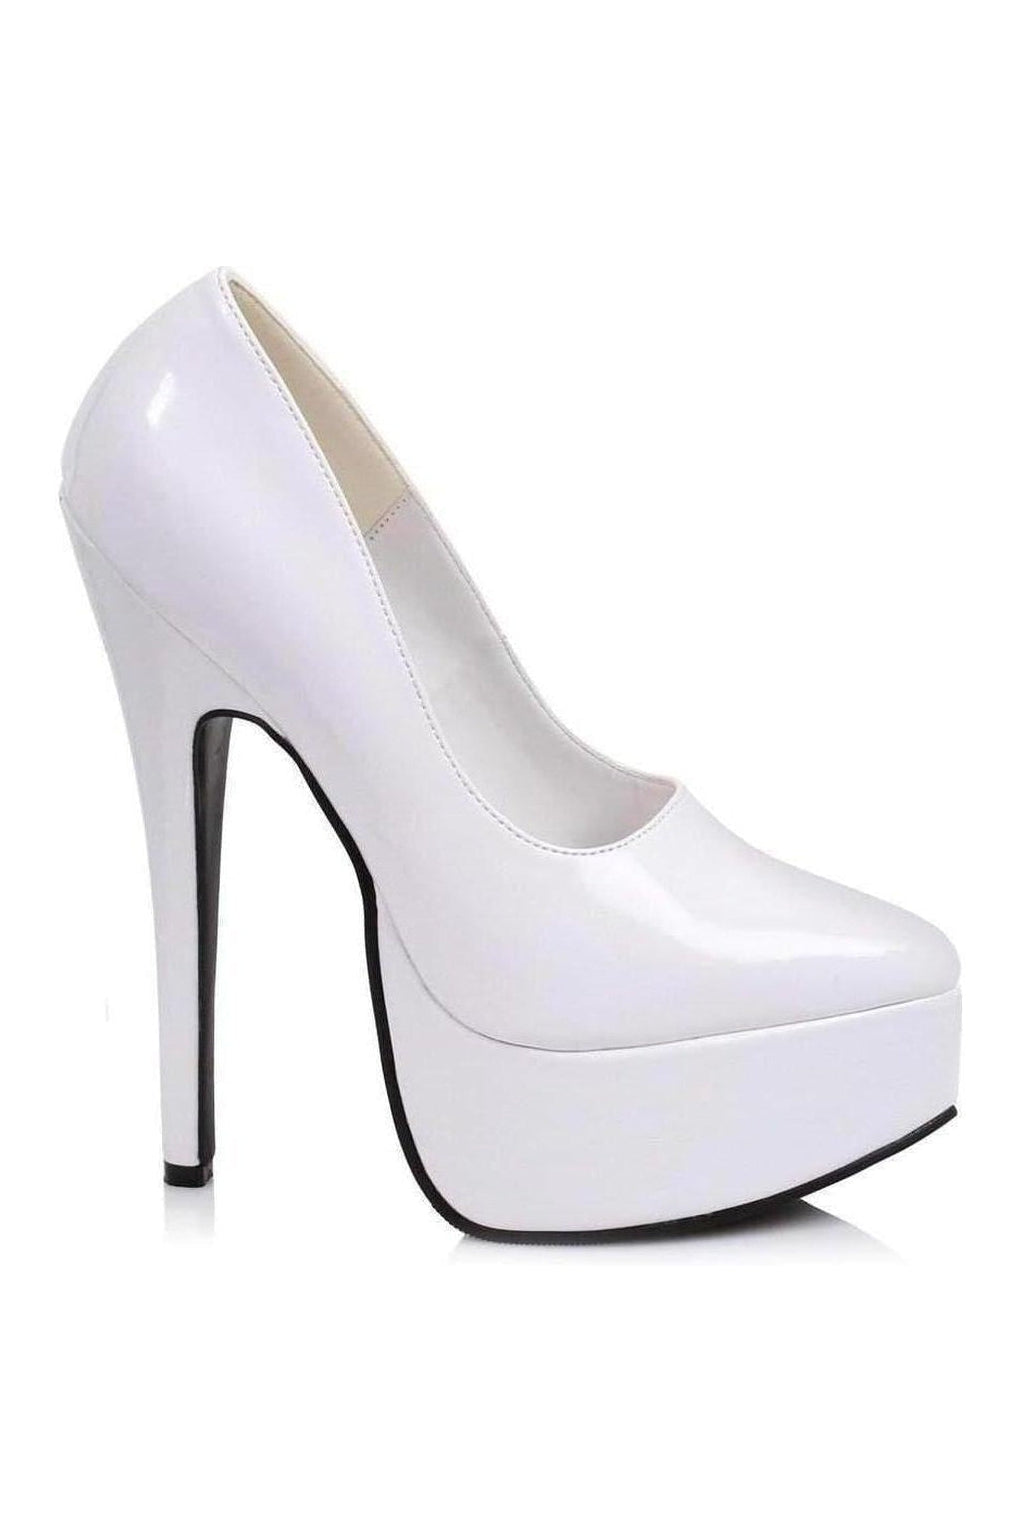 652-PRINCE Platform Pump | White Patent-Ellie Shoes-SEXYSHOES.COM